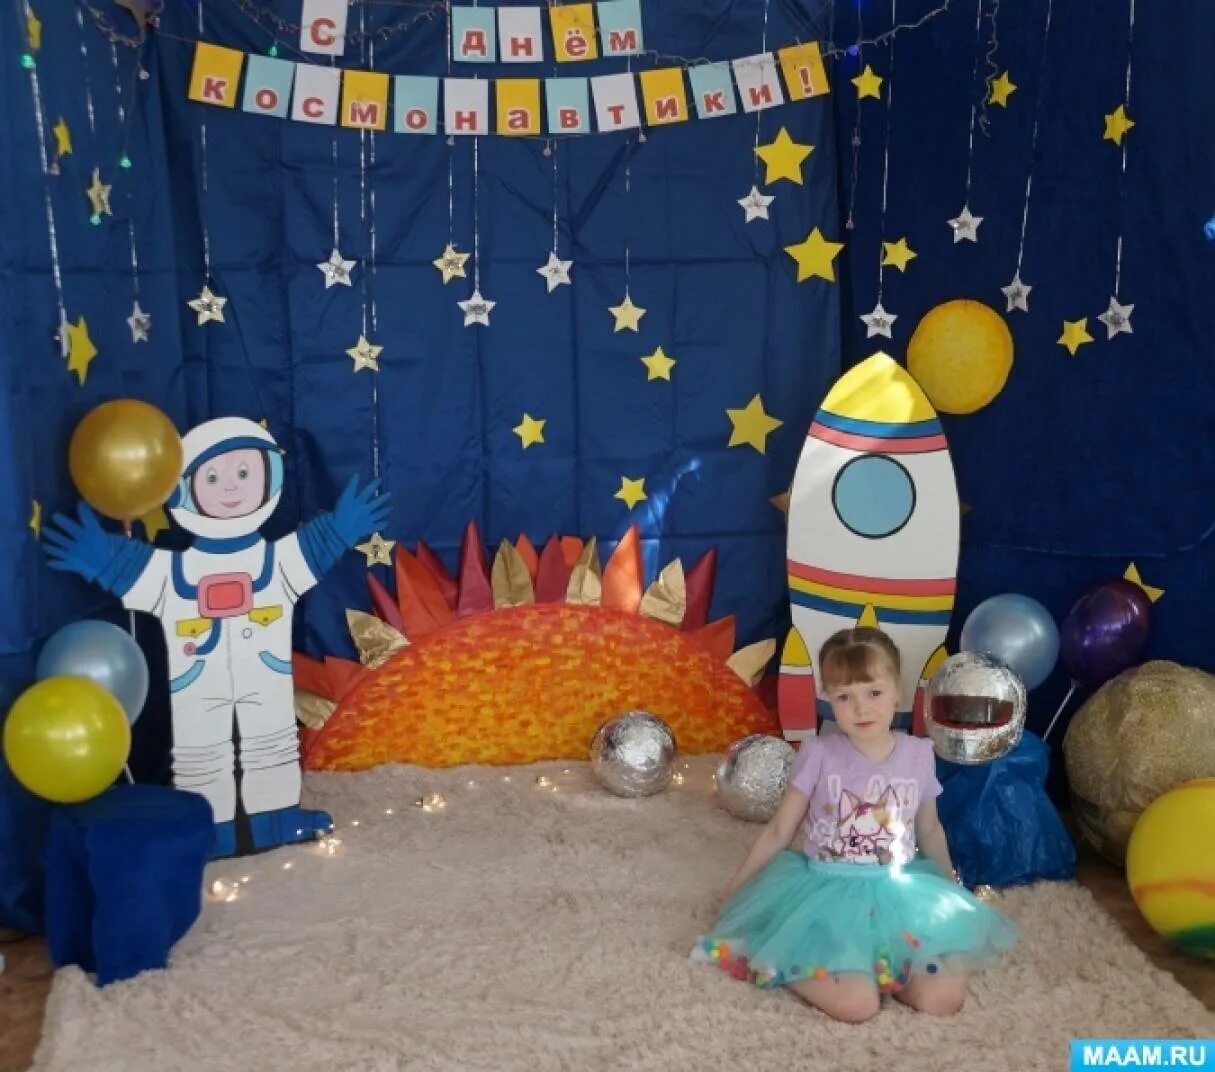 Фотозона космос в детском саду. Фото зона ко Дню космонавтики в детском саду. Фотозона на день космонавтики в детском саду. Оформление фотозоны космос в детском саду.